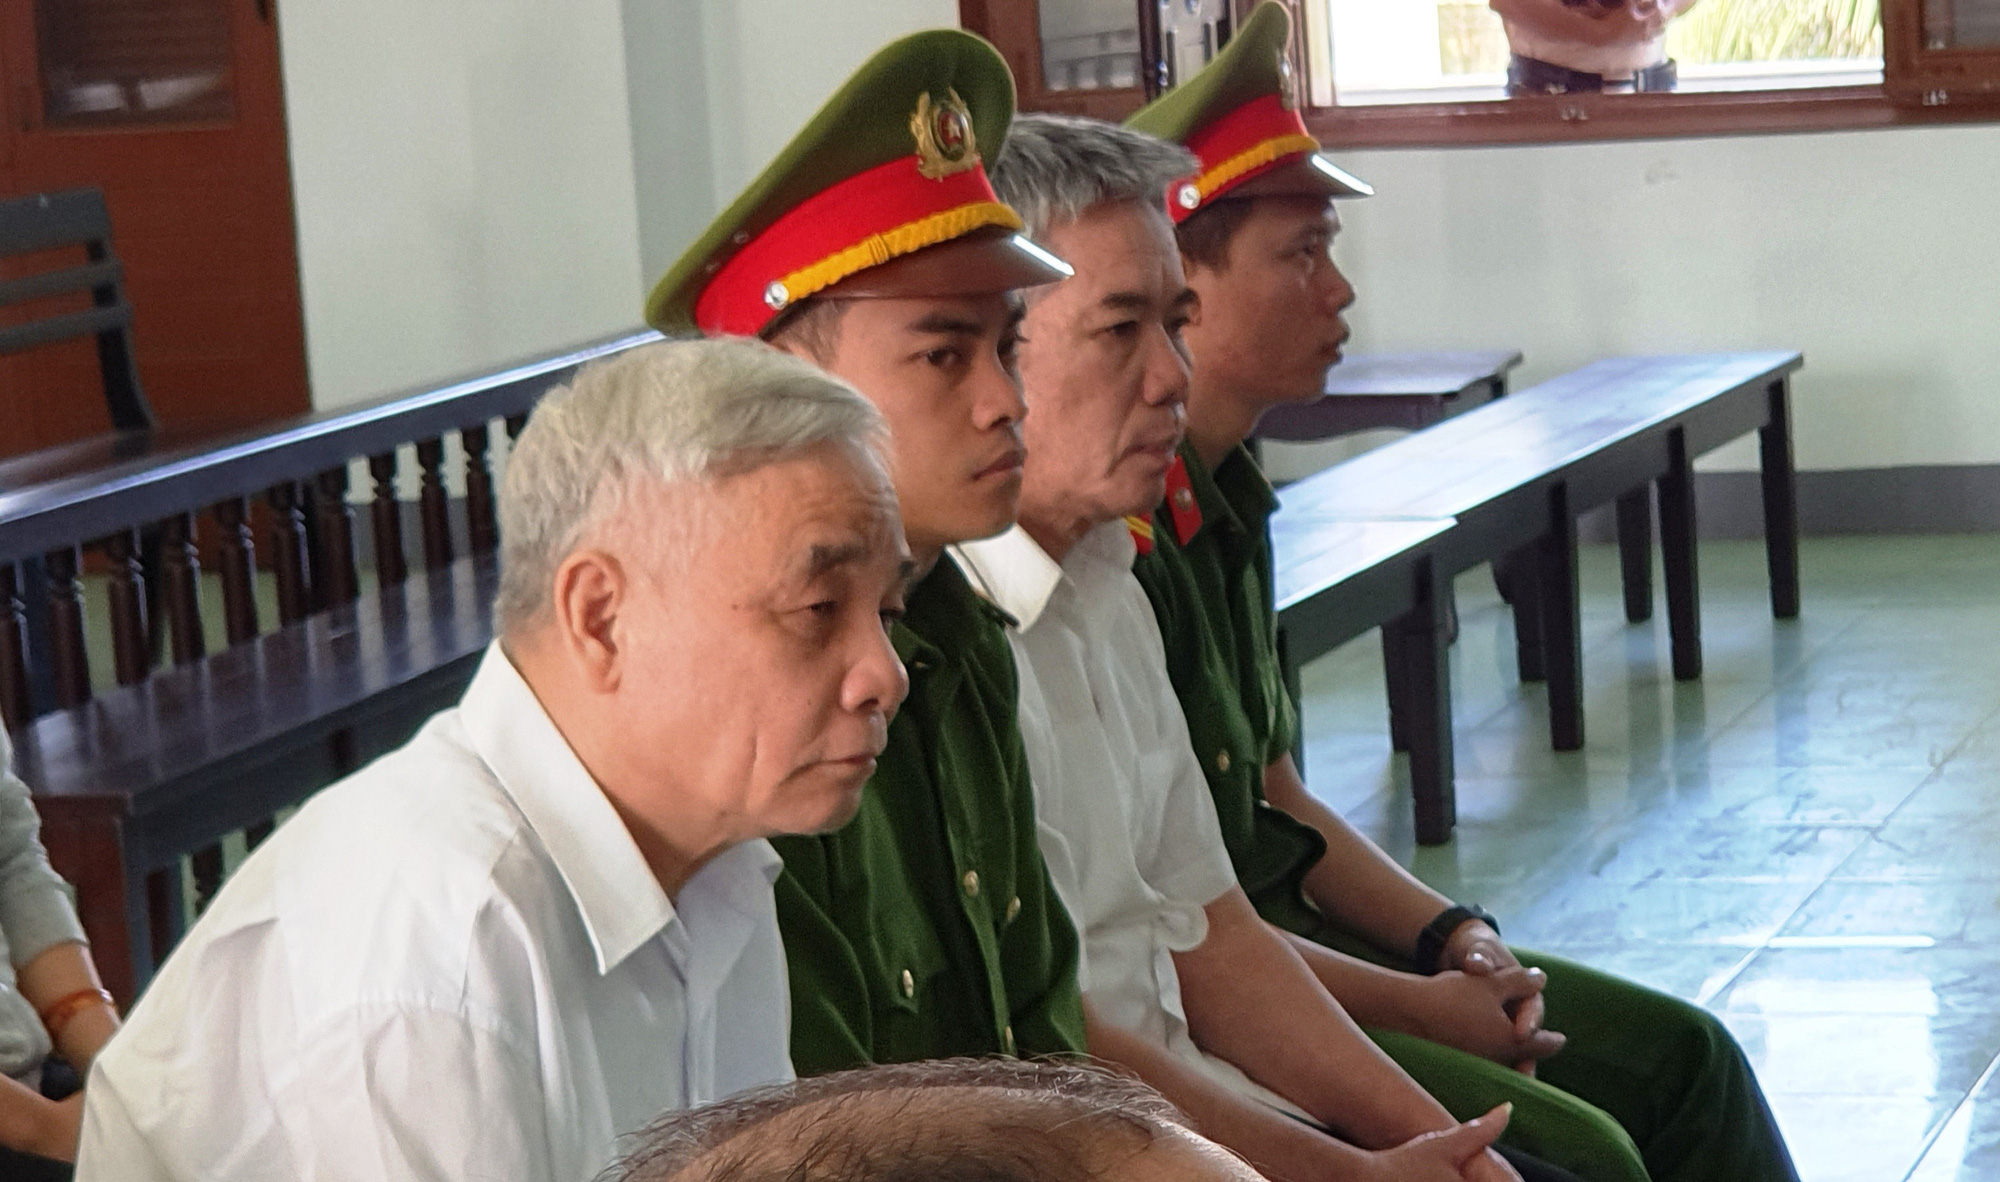 Cựu chánh án Phú Yên đối diện mức án 15 năm 6 tháng - 16 năm tù về tội tham ô - Ảnh 4.